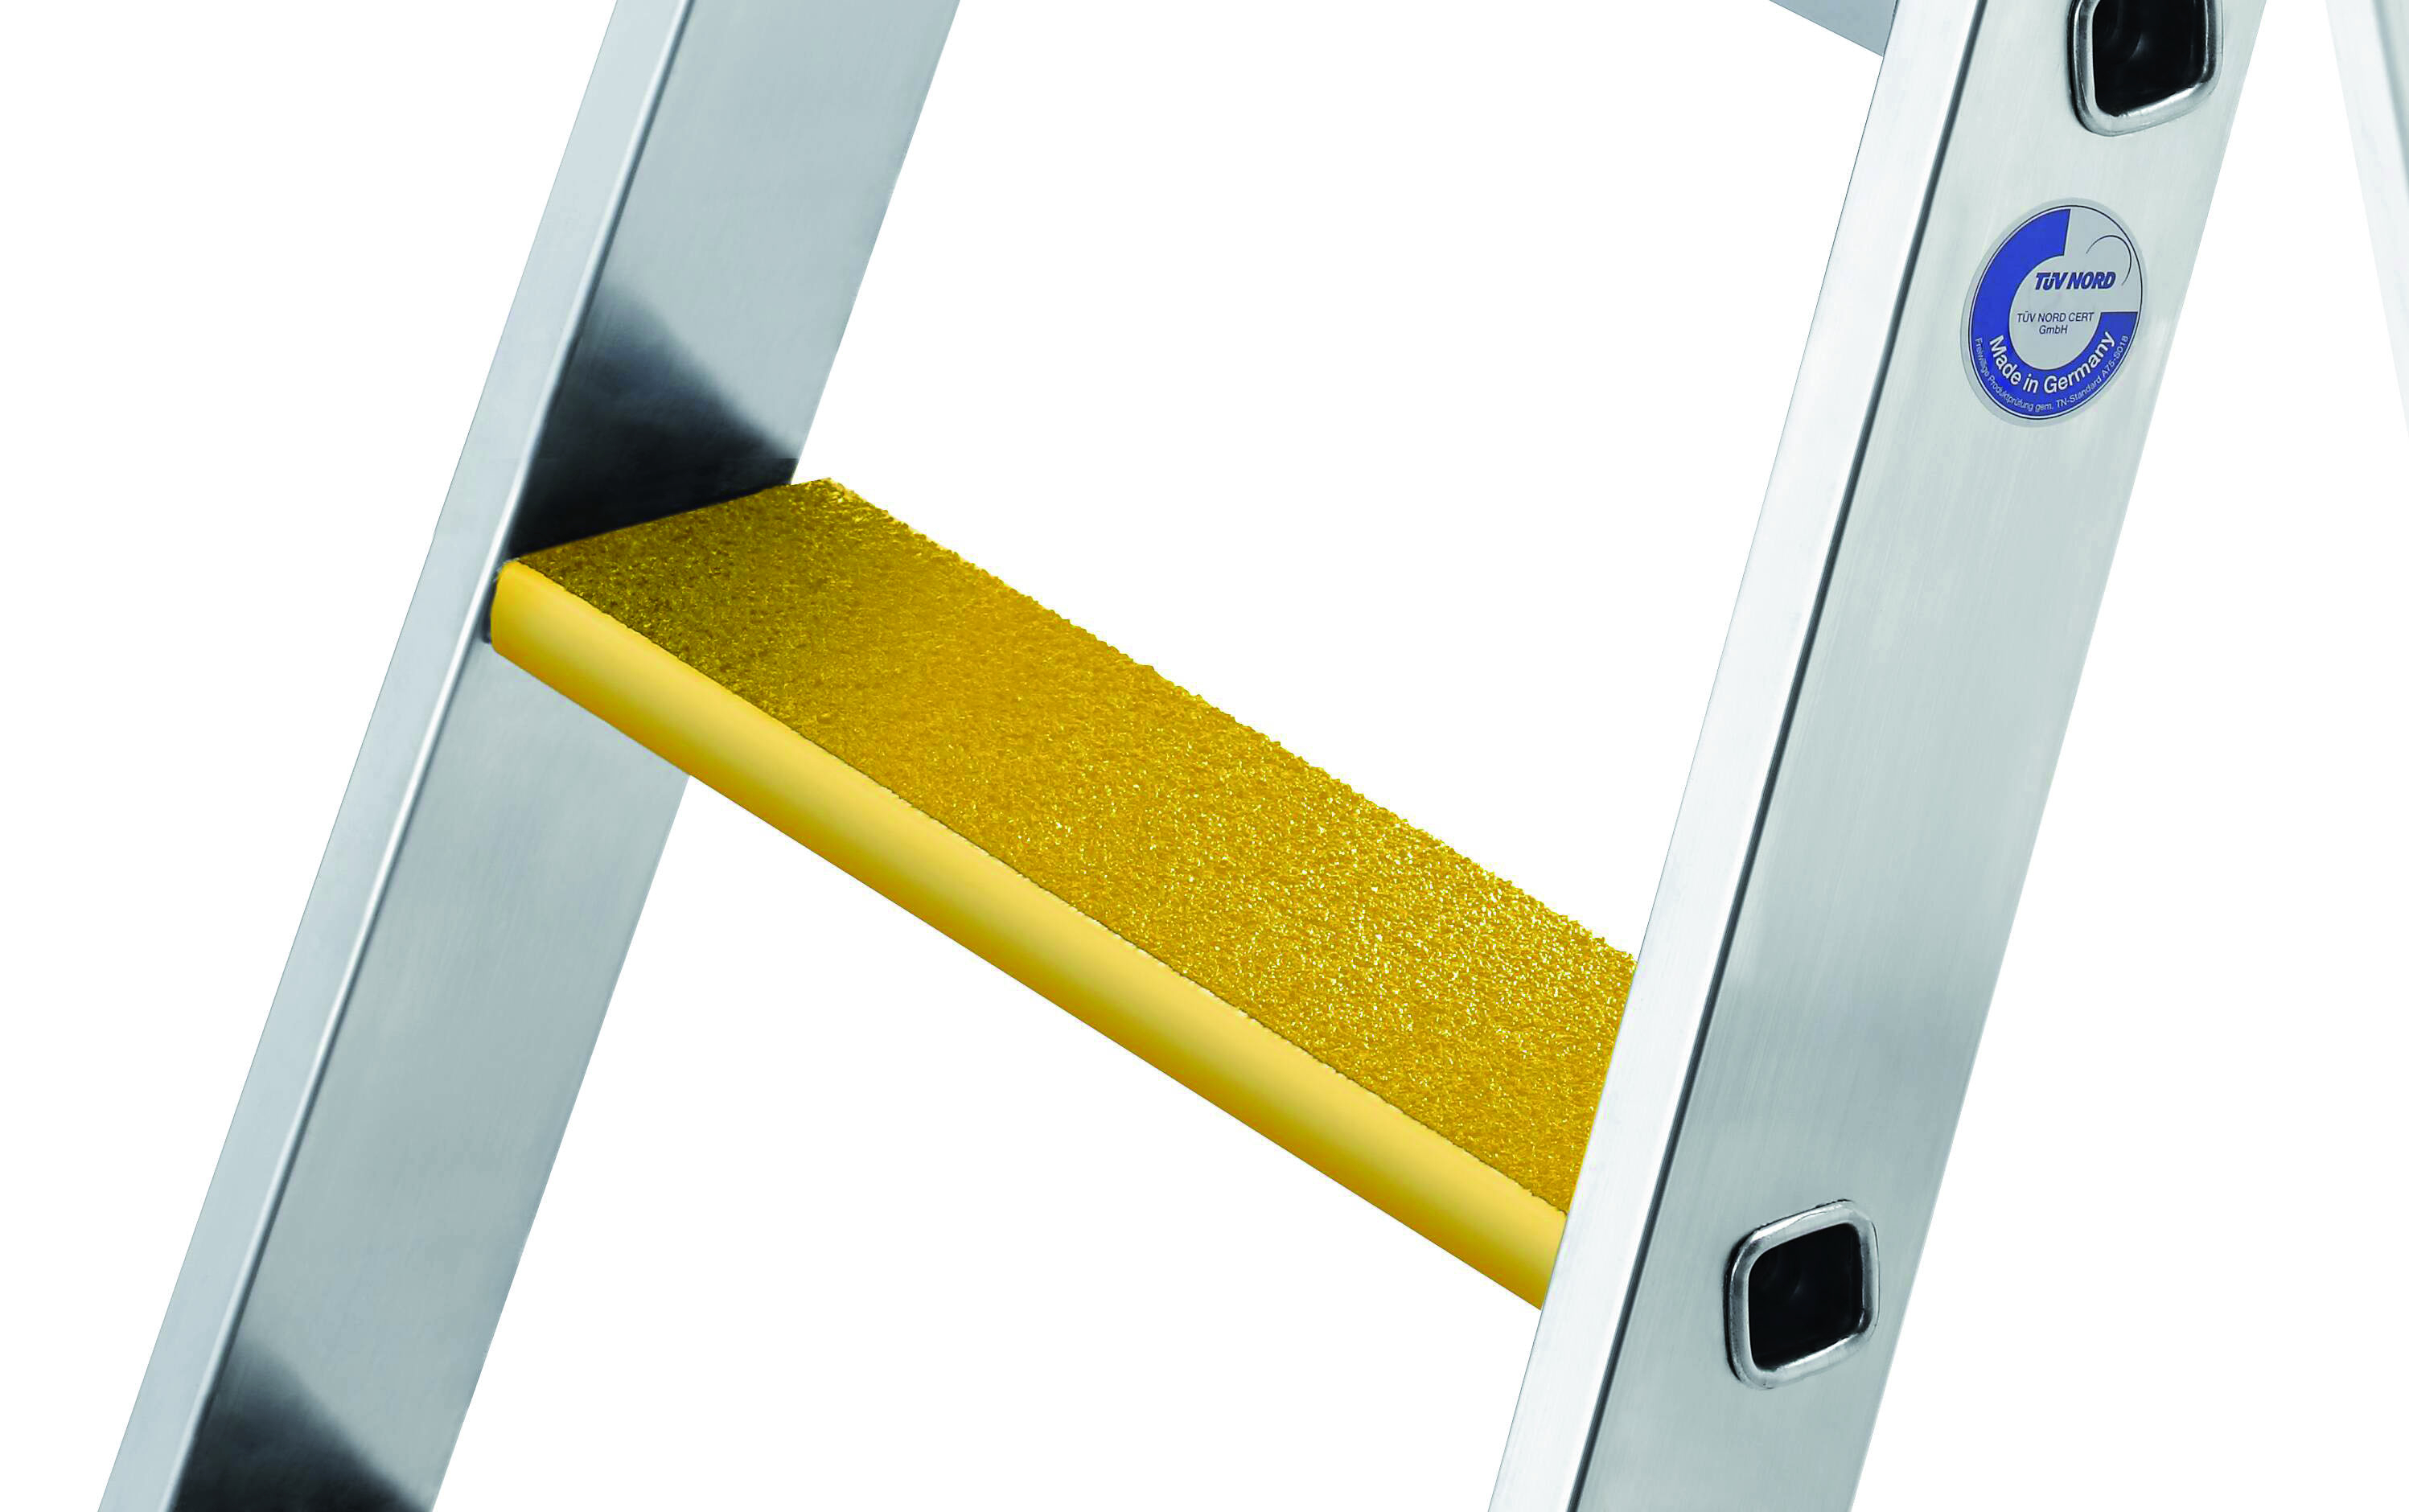 Nachrüstsatz Trittauflage clip-step R 13 gelb, 667 mm